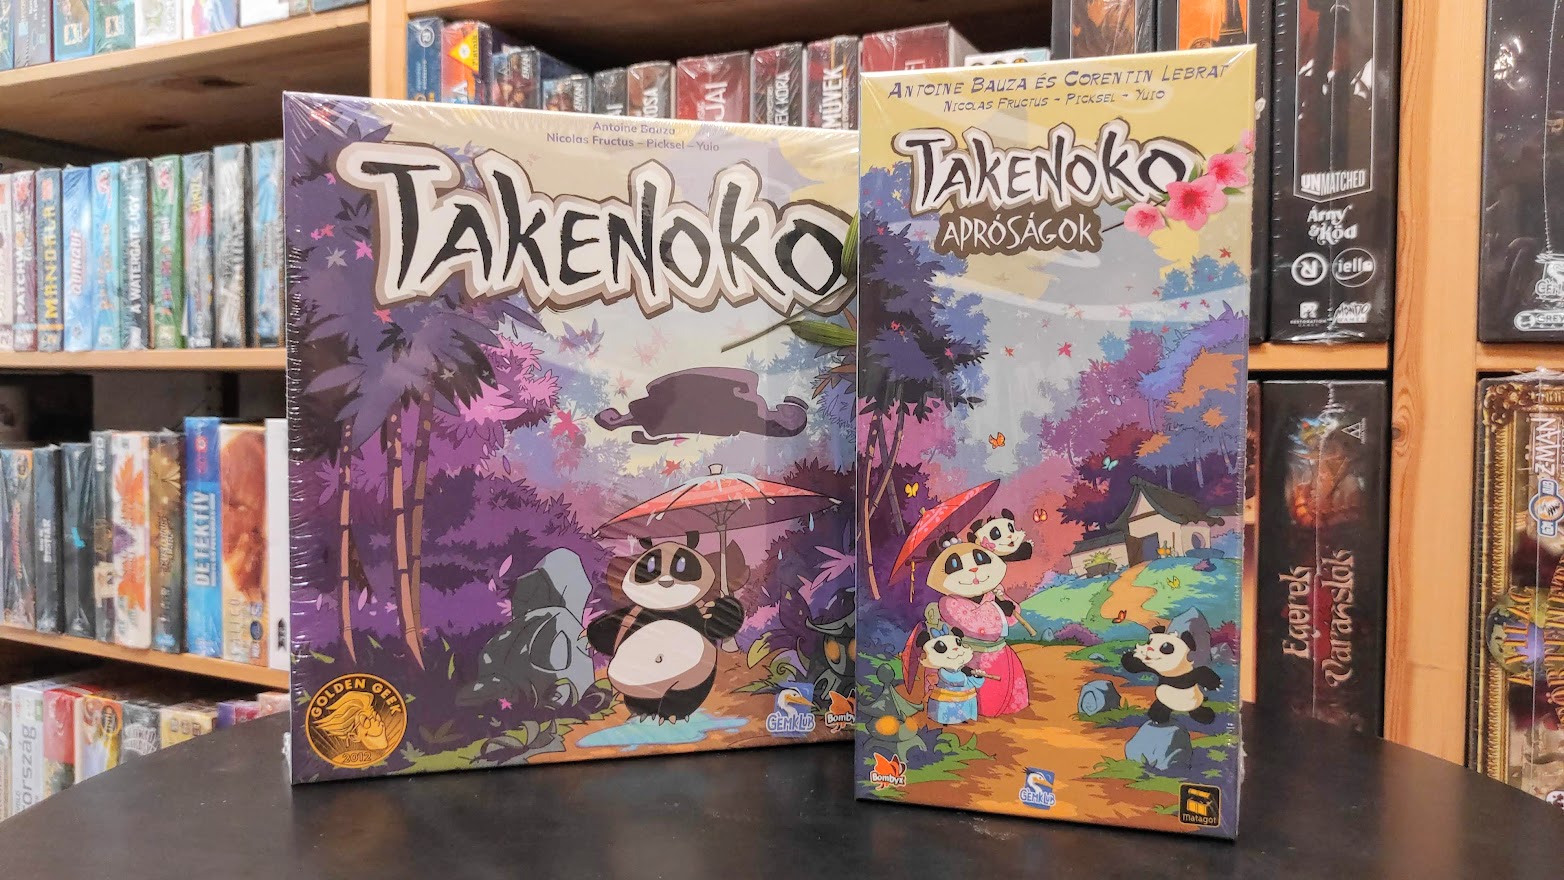 Takenoko apróságok, Takenoko: Chibis (2015)